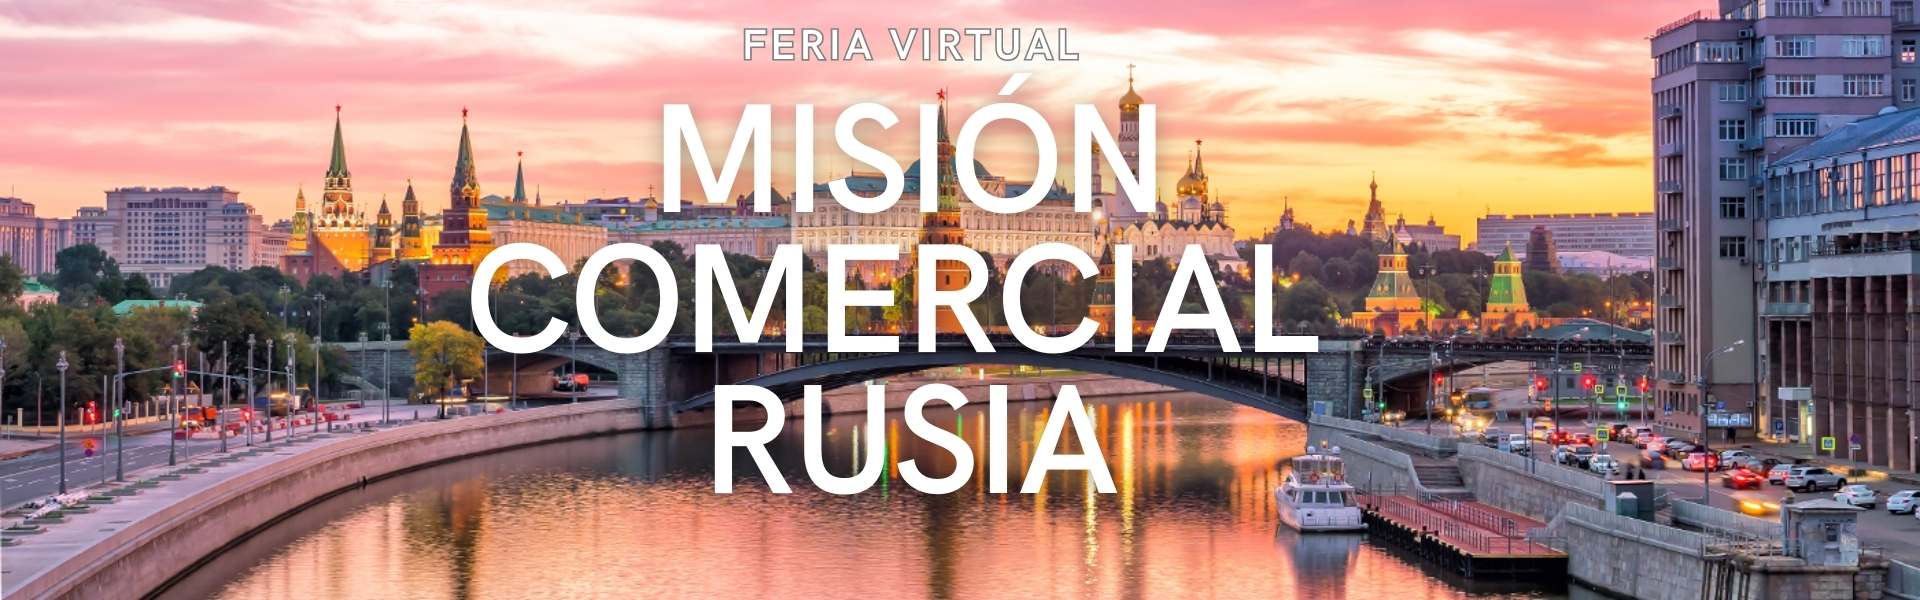 Bodega Balcona participa en la Misión Comercial Virtual en Rusia